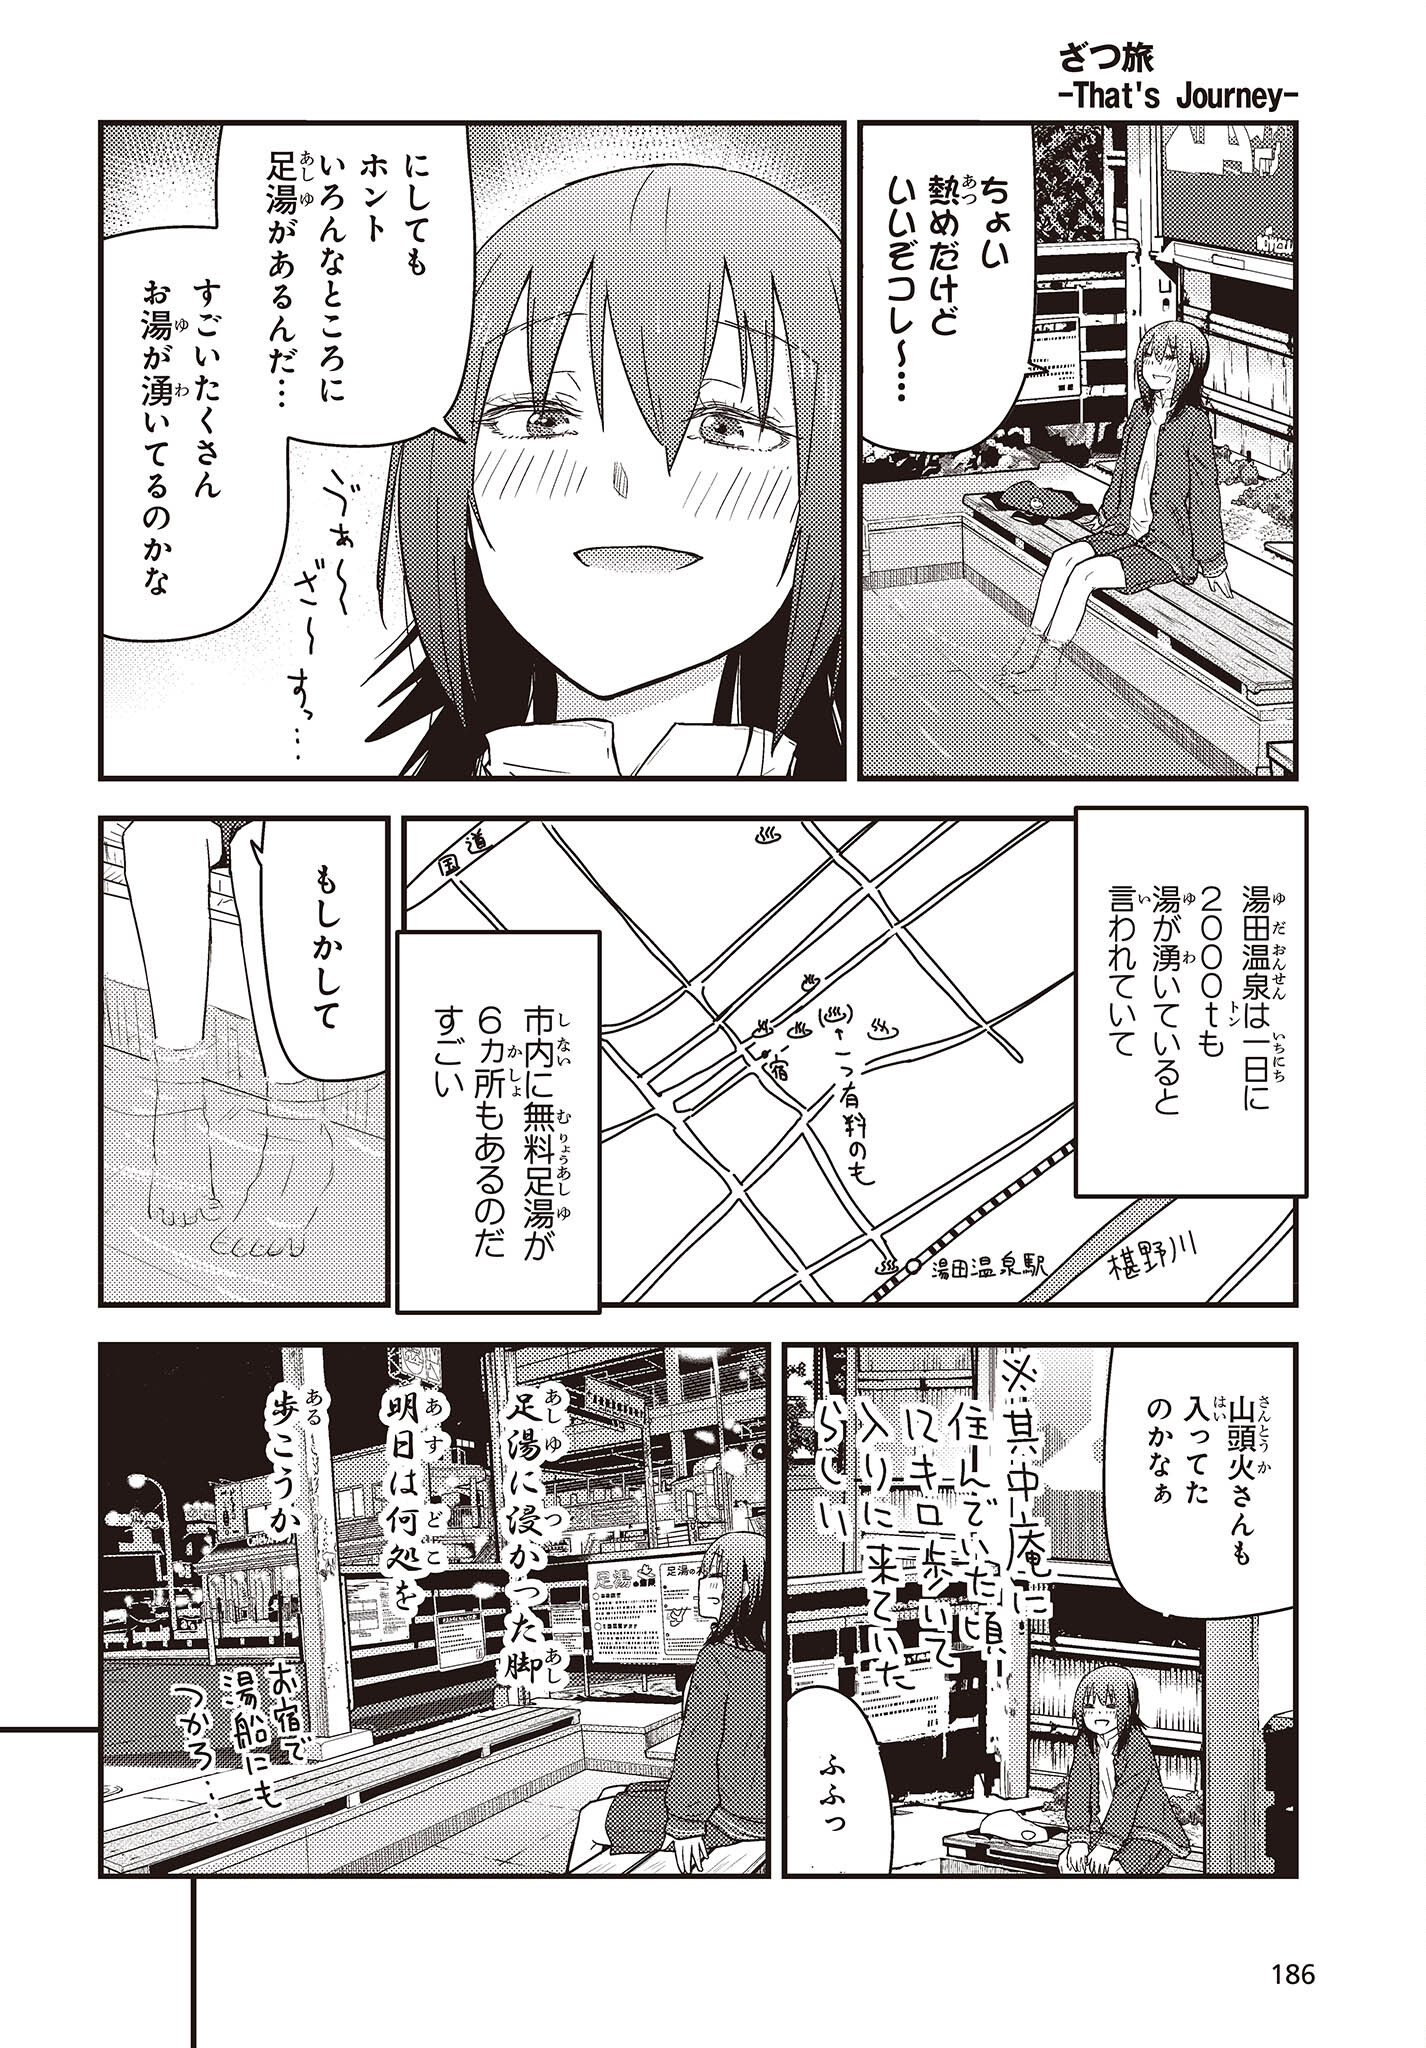 ざつ旅-That’s Journey- 第29話 - Page 14